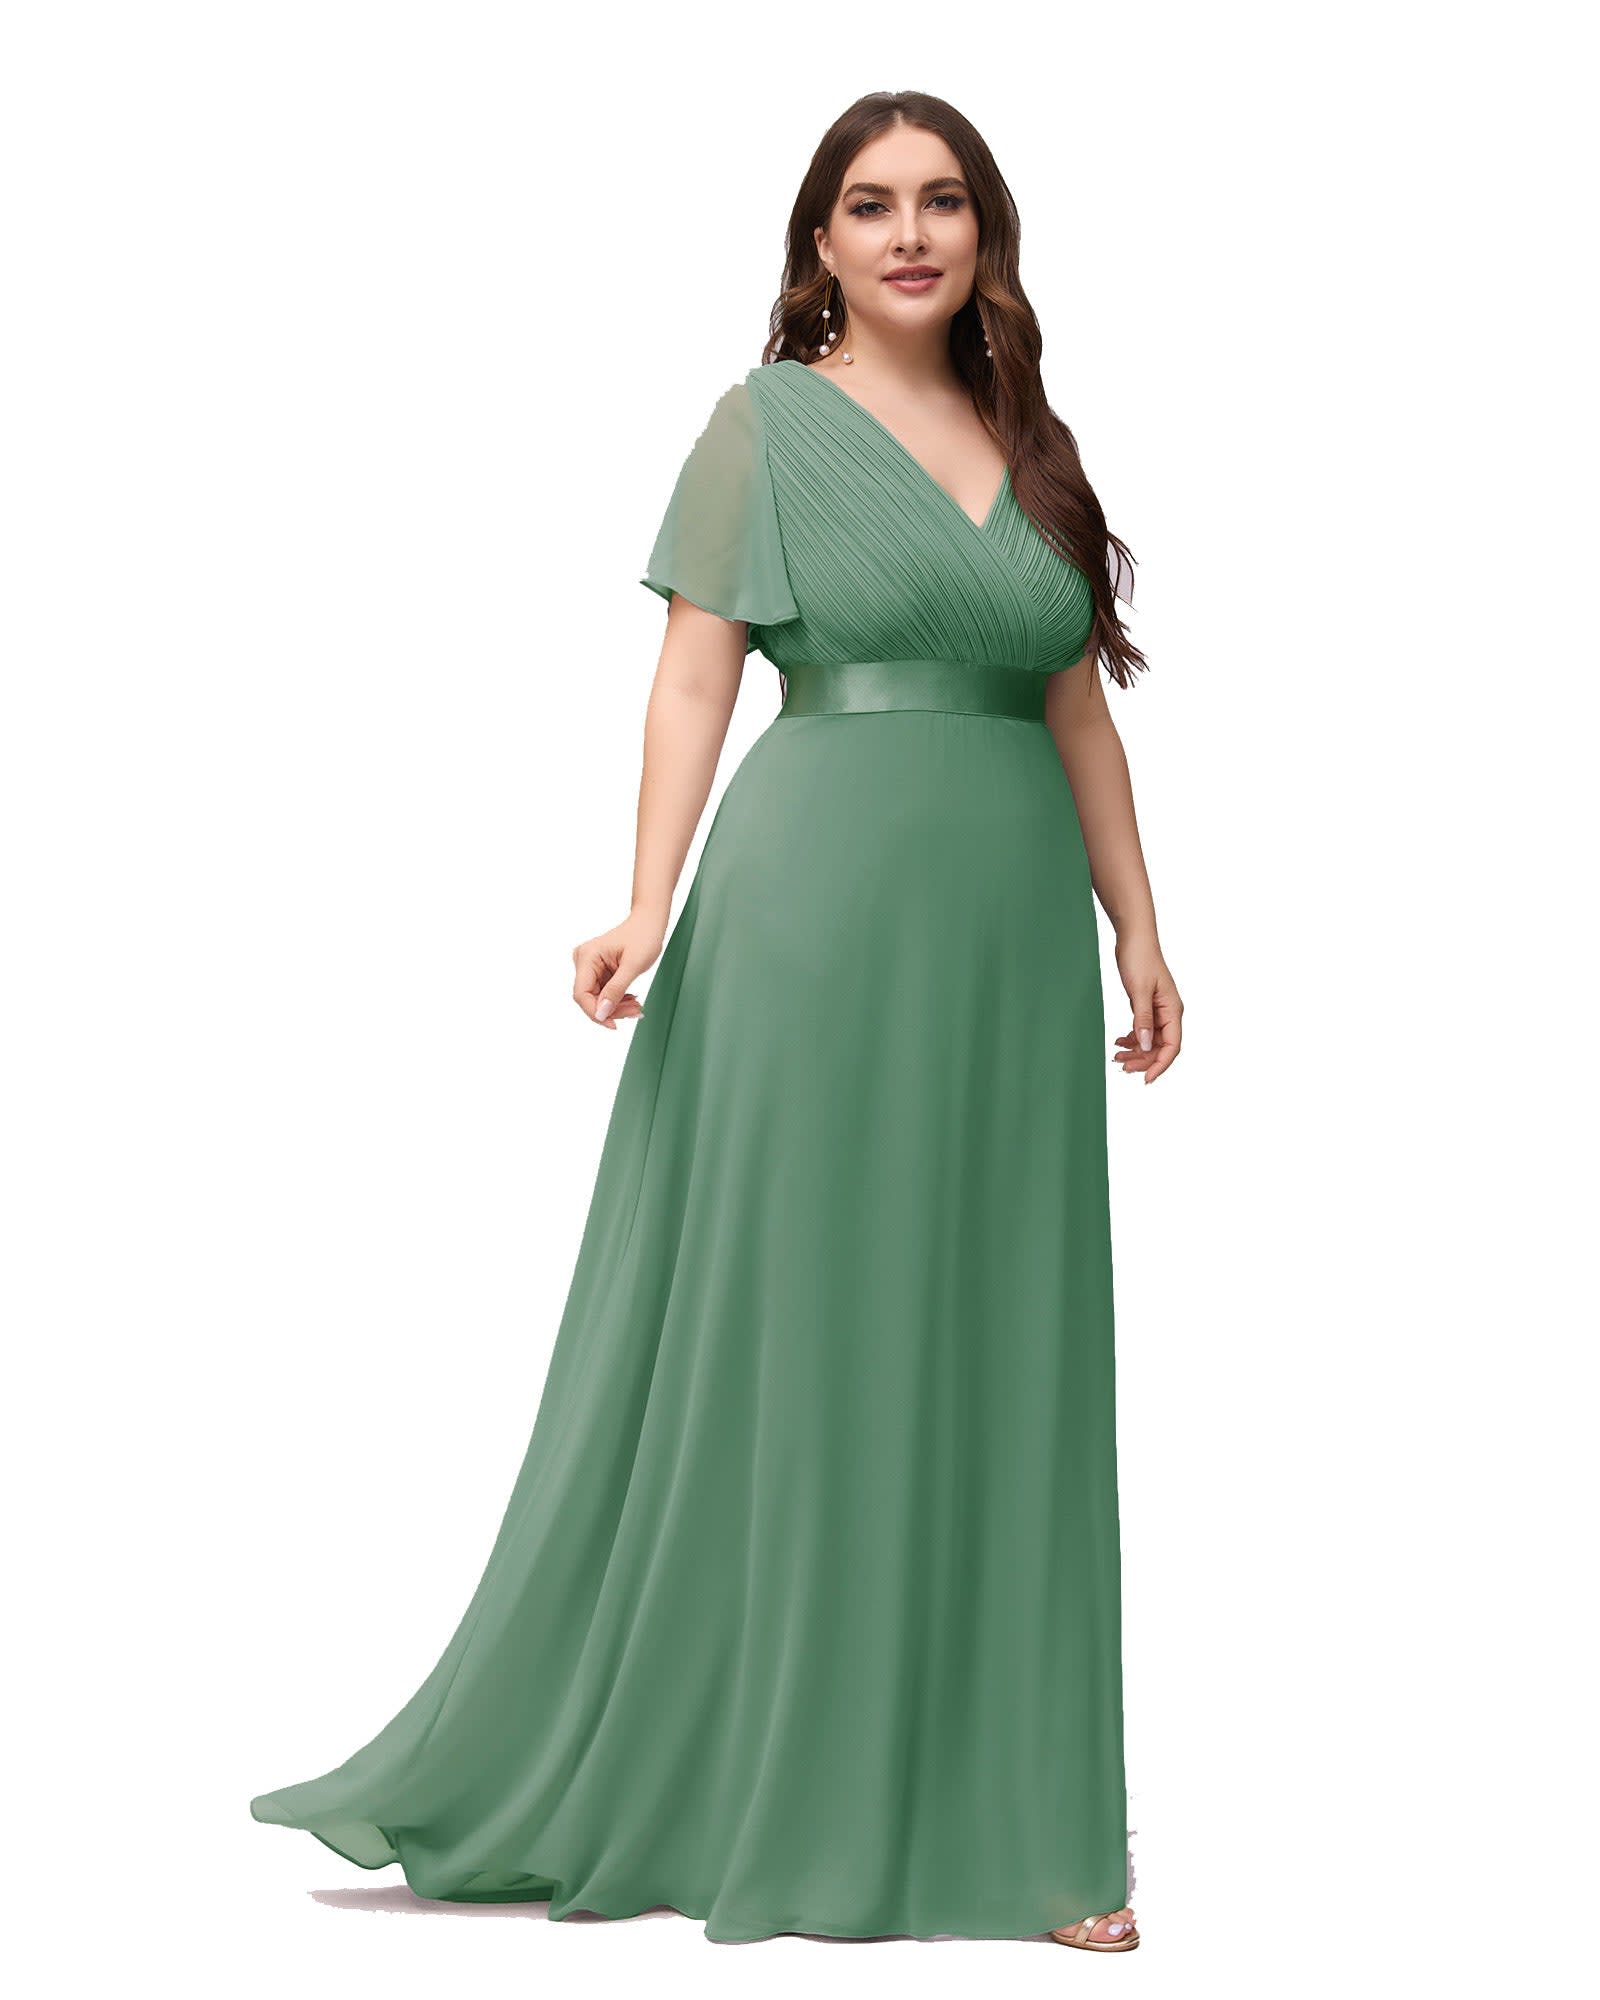 Long Chiffon Empire Waist Bridesmaid Dress with Short Flutter Sleeves | Green Bean